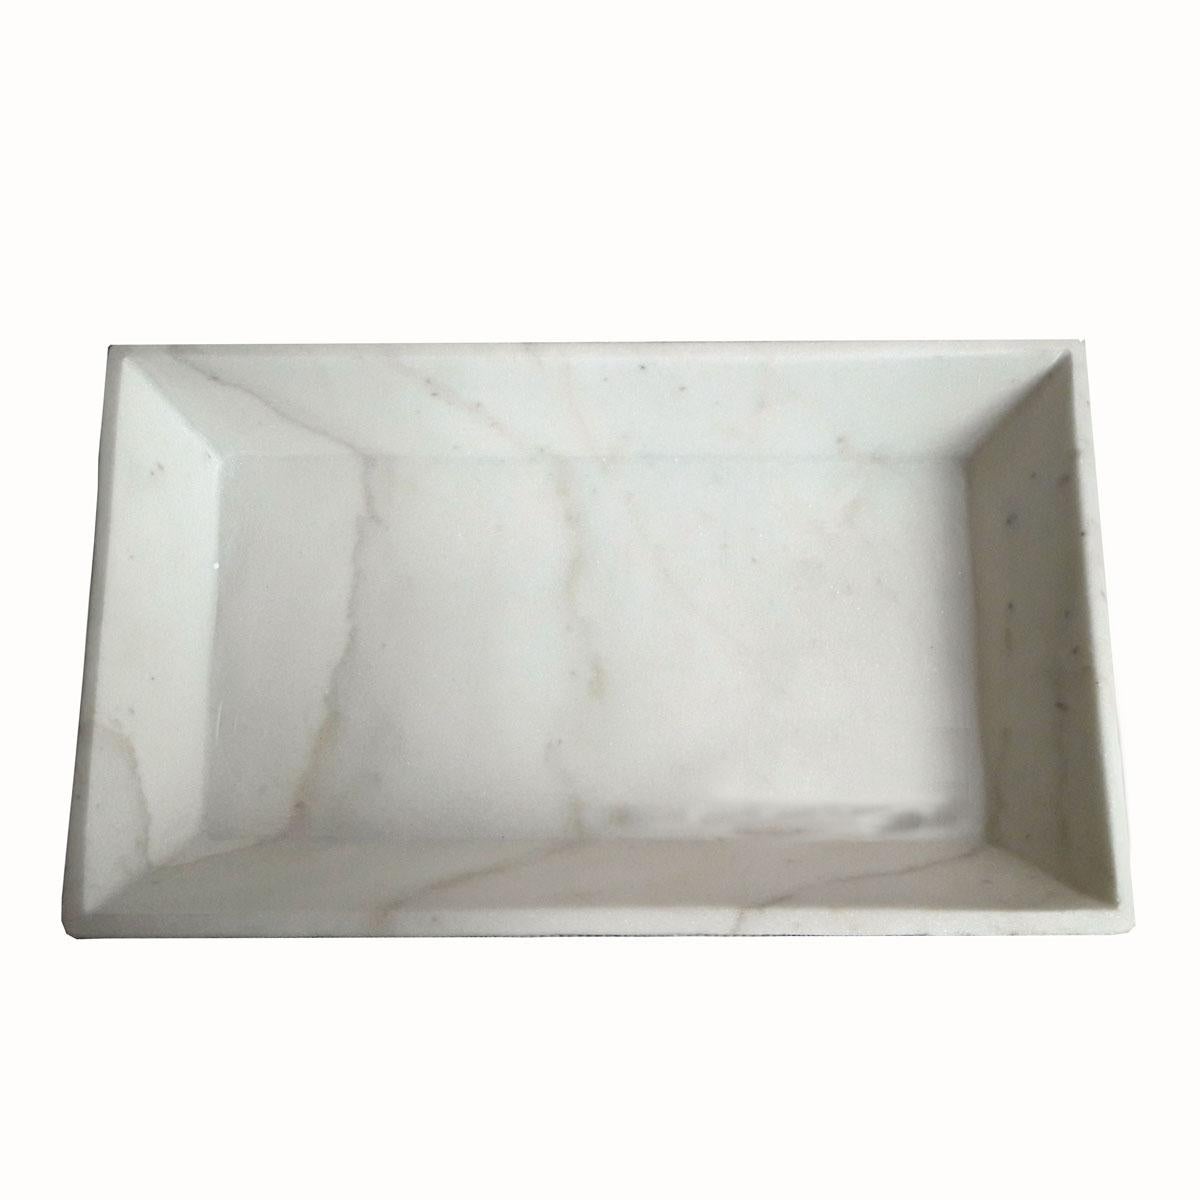 Un plateau en marbre blanc d'Inde avec des côtés biseautés. Épuré et élégant, ce petit plateau est idéal comme plateau à accessoires pour le meuble-lavabo d'une chambre à coucher, comme plateau à serviettes de salle de bains ou comme élément